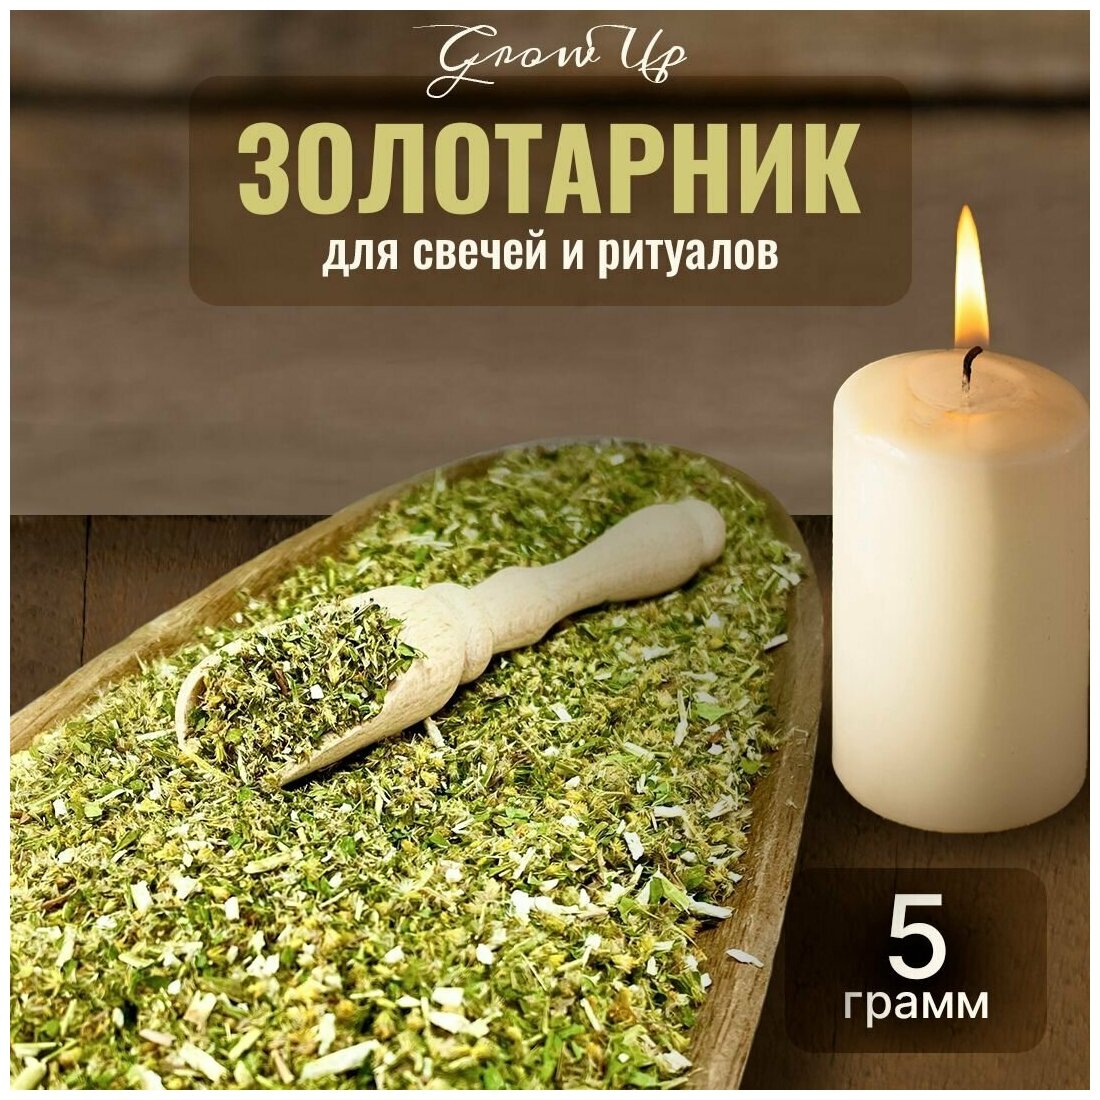 Сухая трава Золотарник для свечей и ритуалов, 5 гр